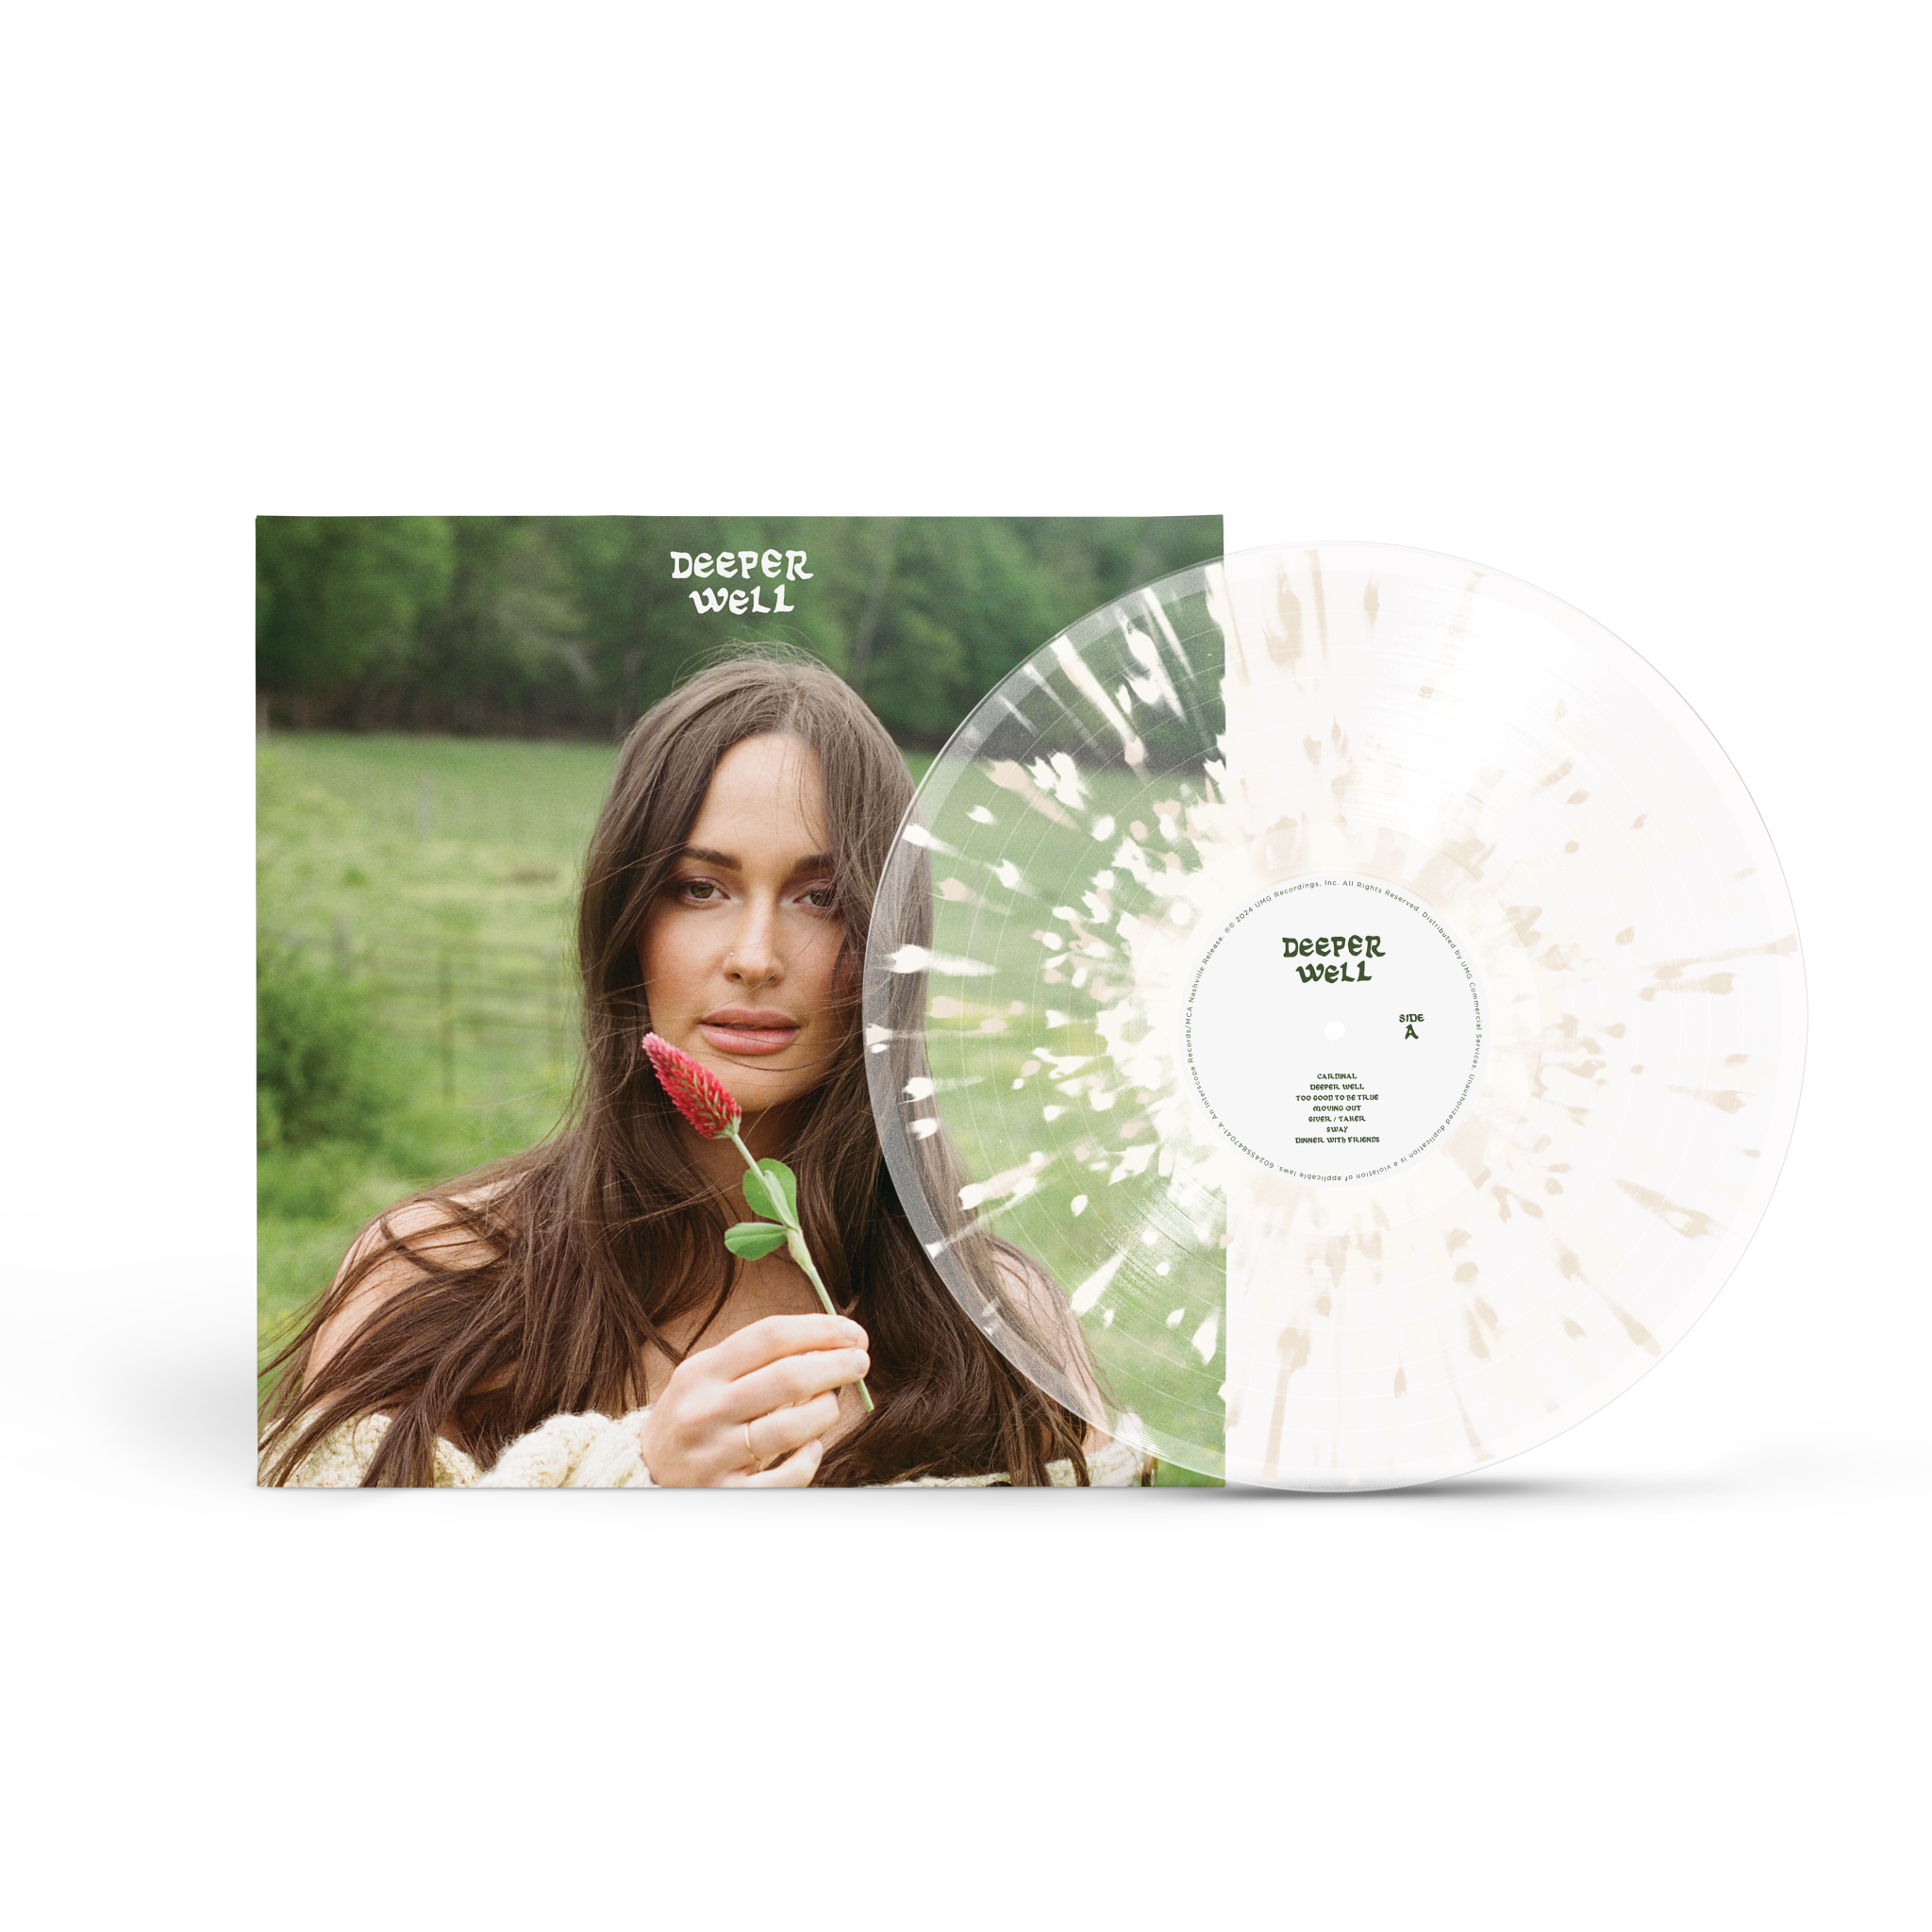 KACEY MUSGRAVES - Deeper Well - LP - Transparent Spilled Milk Splatter Vinyl